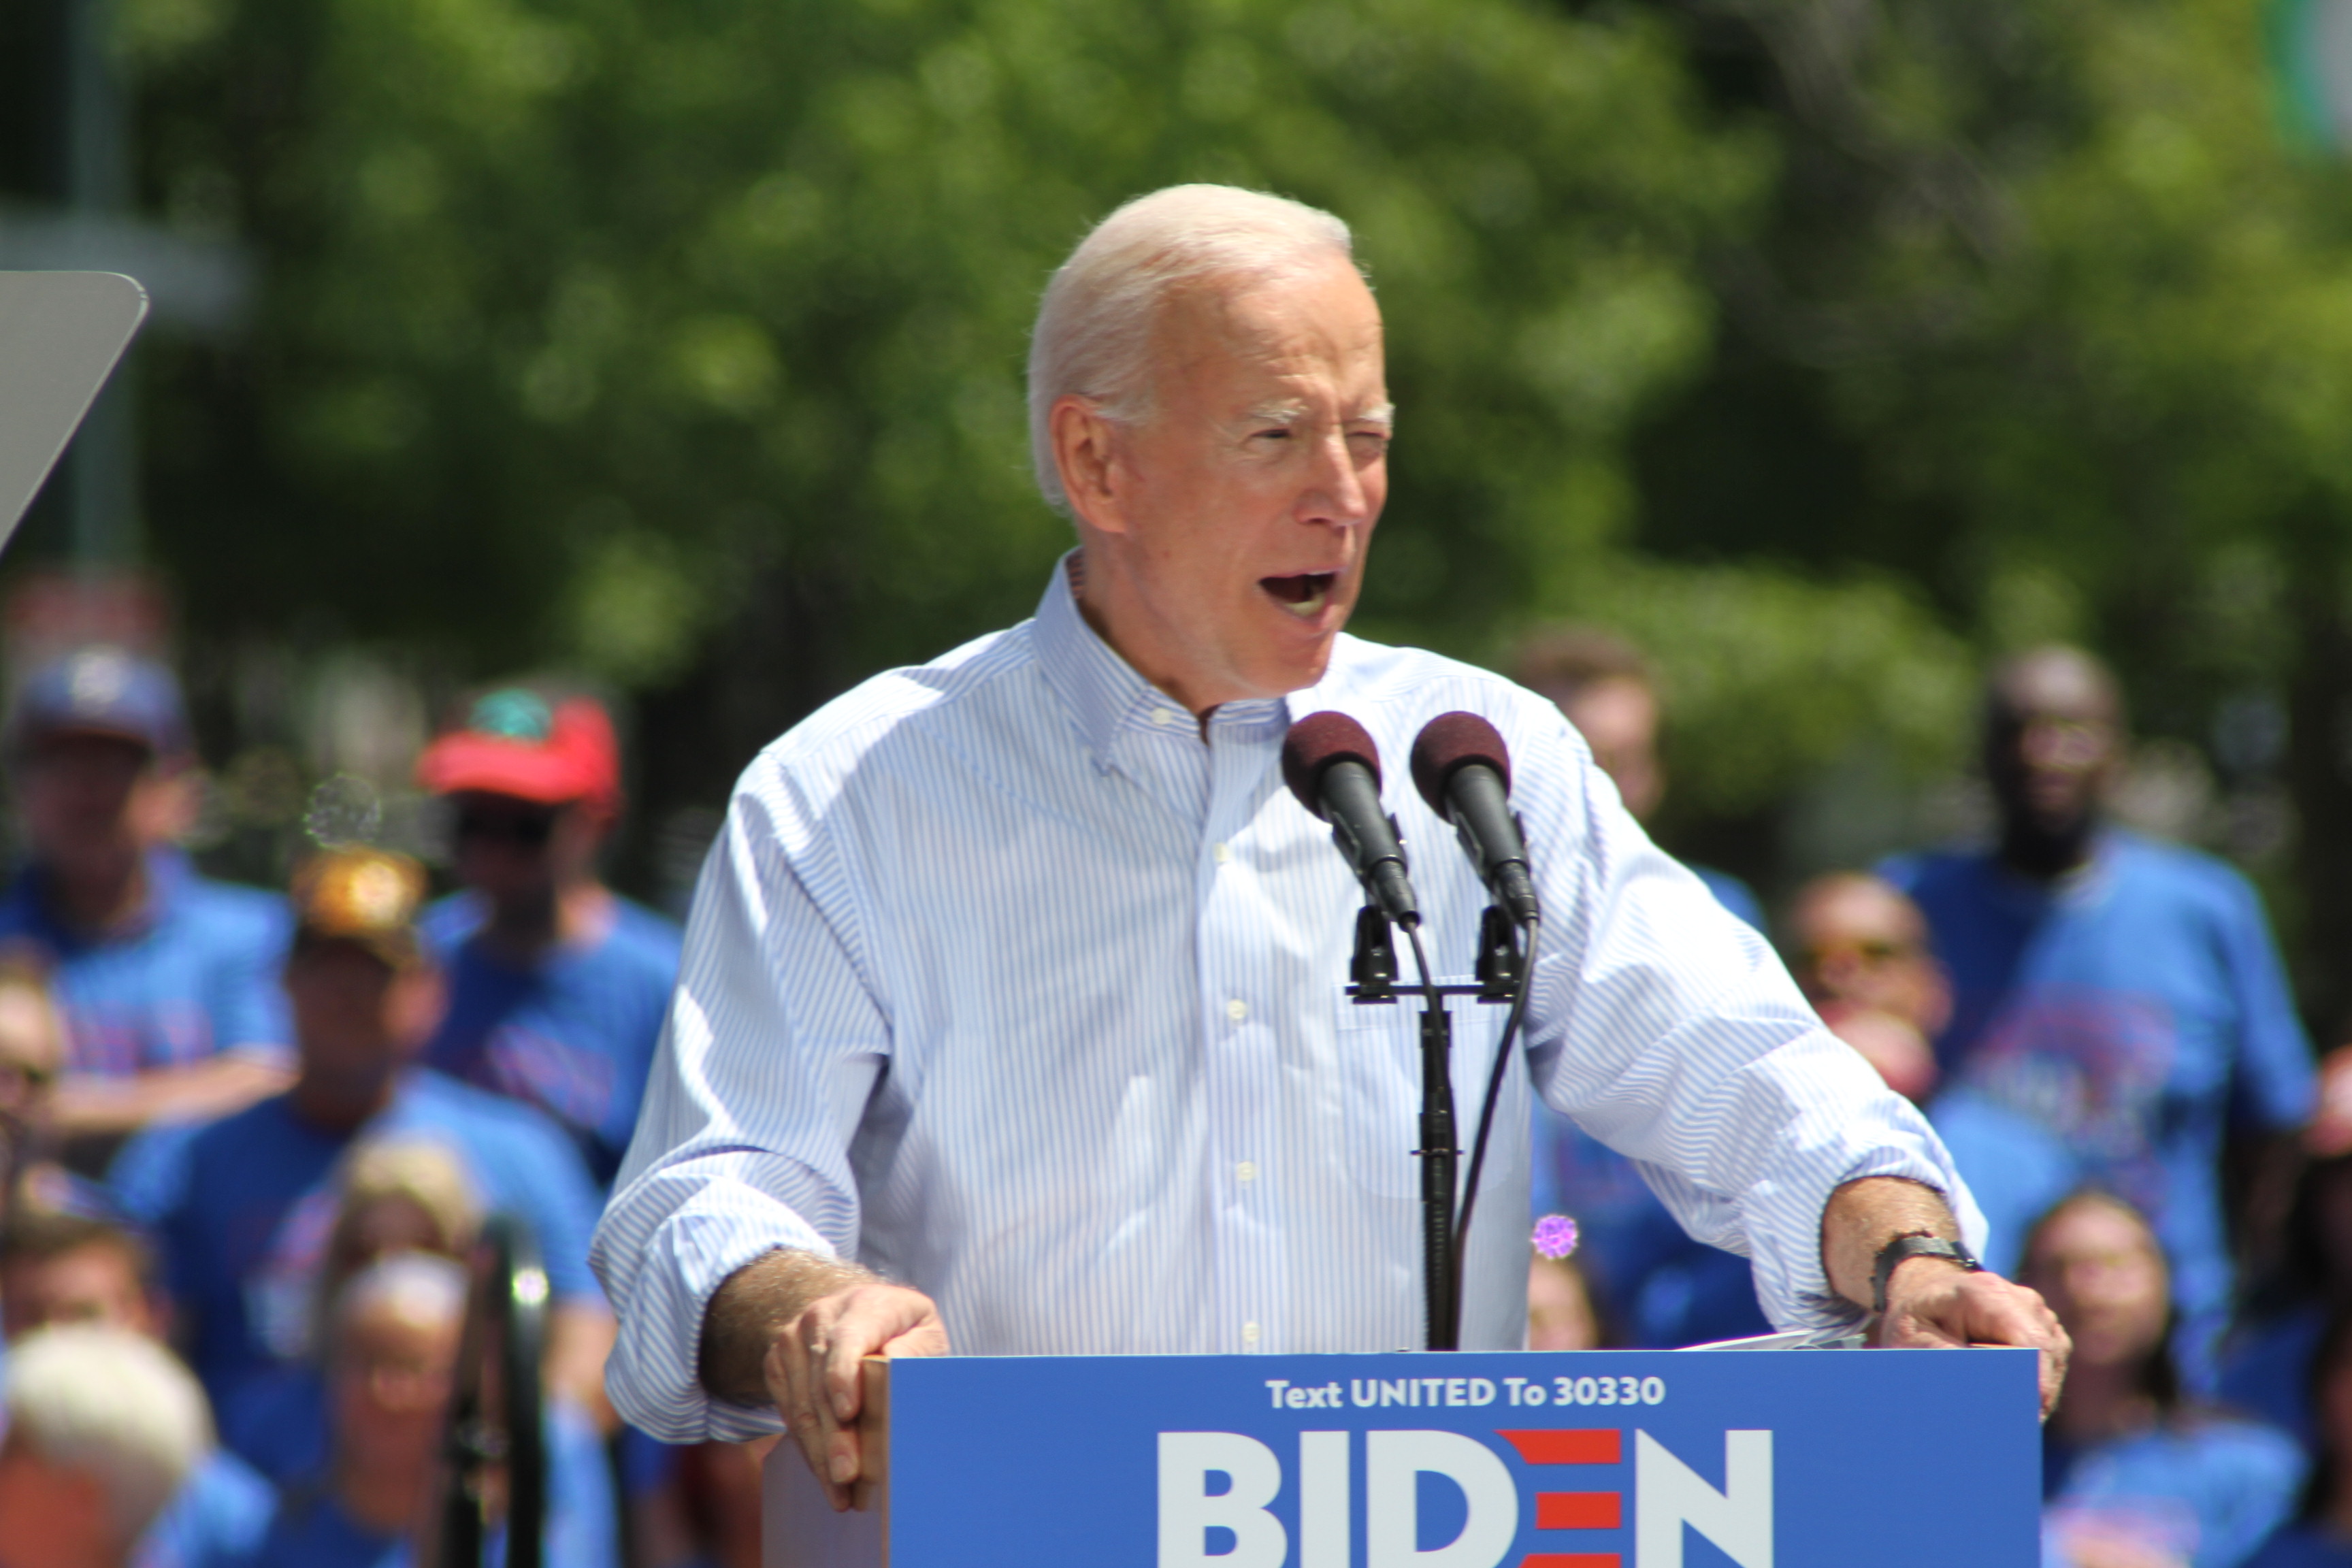 Biden for President Rally in Philadelphia